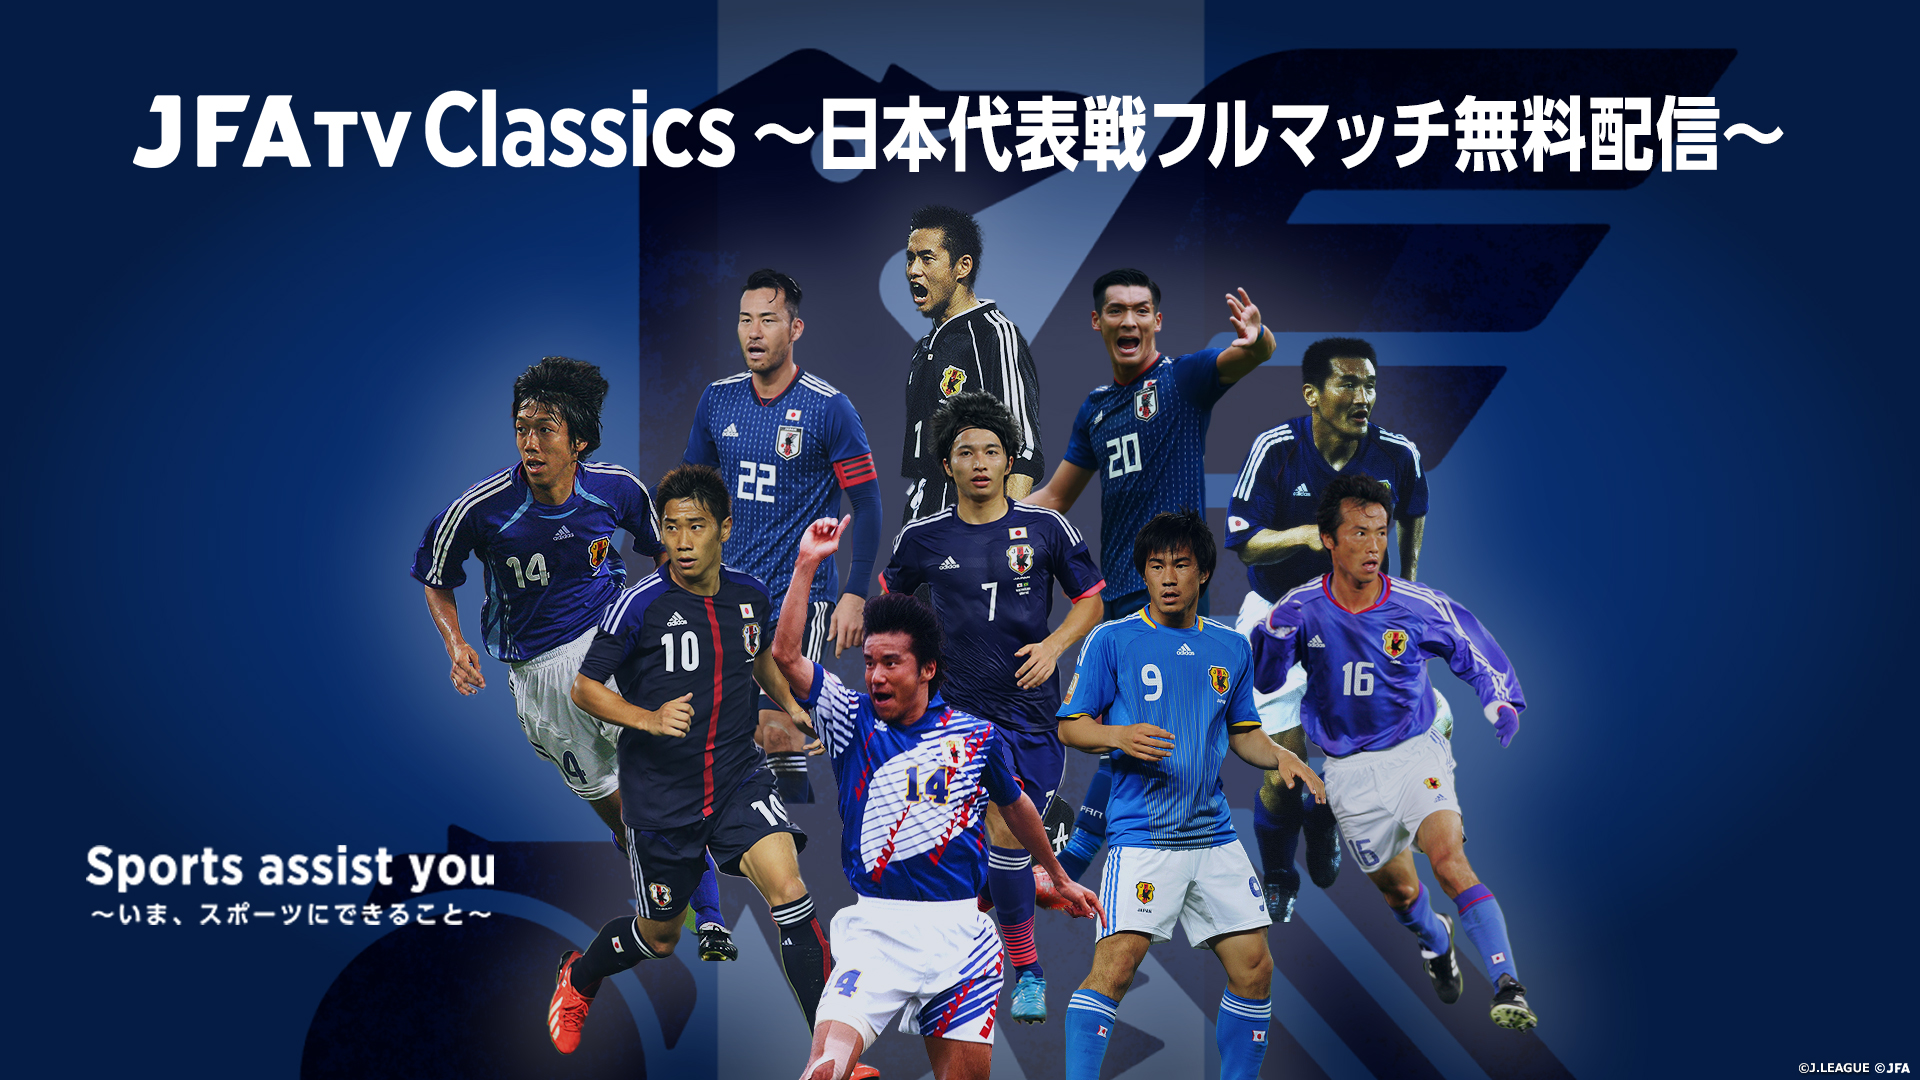 Jfatv Classics 日本代表戦フルマッチ無料配信 Sports Assist You いま スポーツにできること Jfa 公益財団法人日本サッカー協会